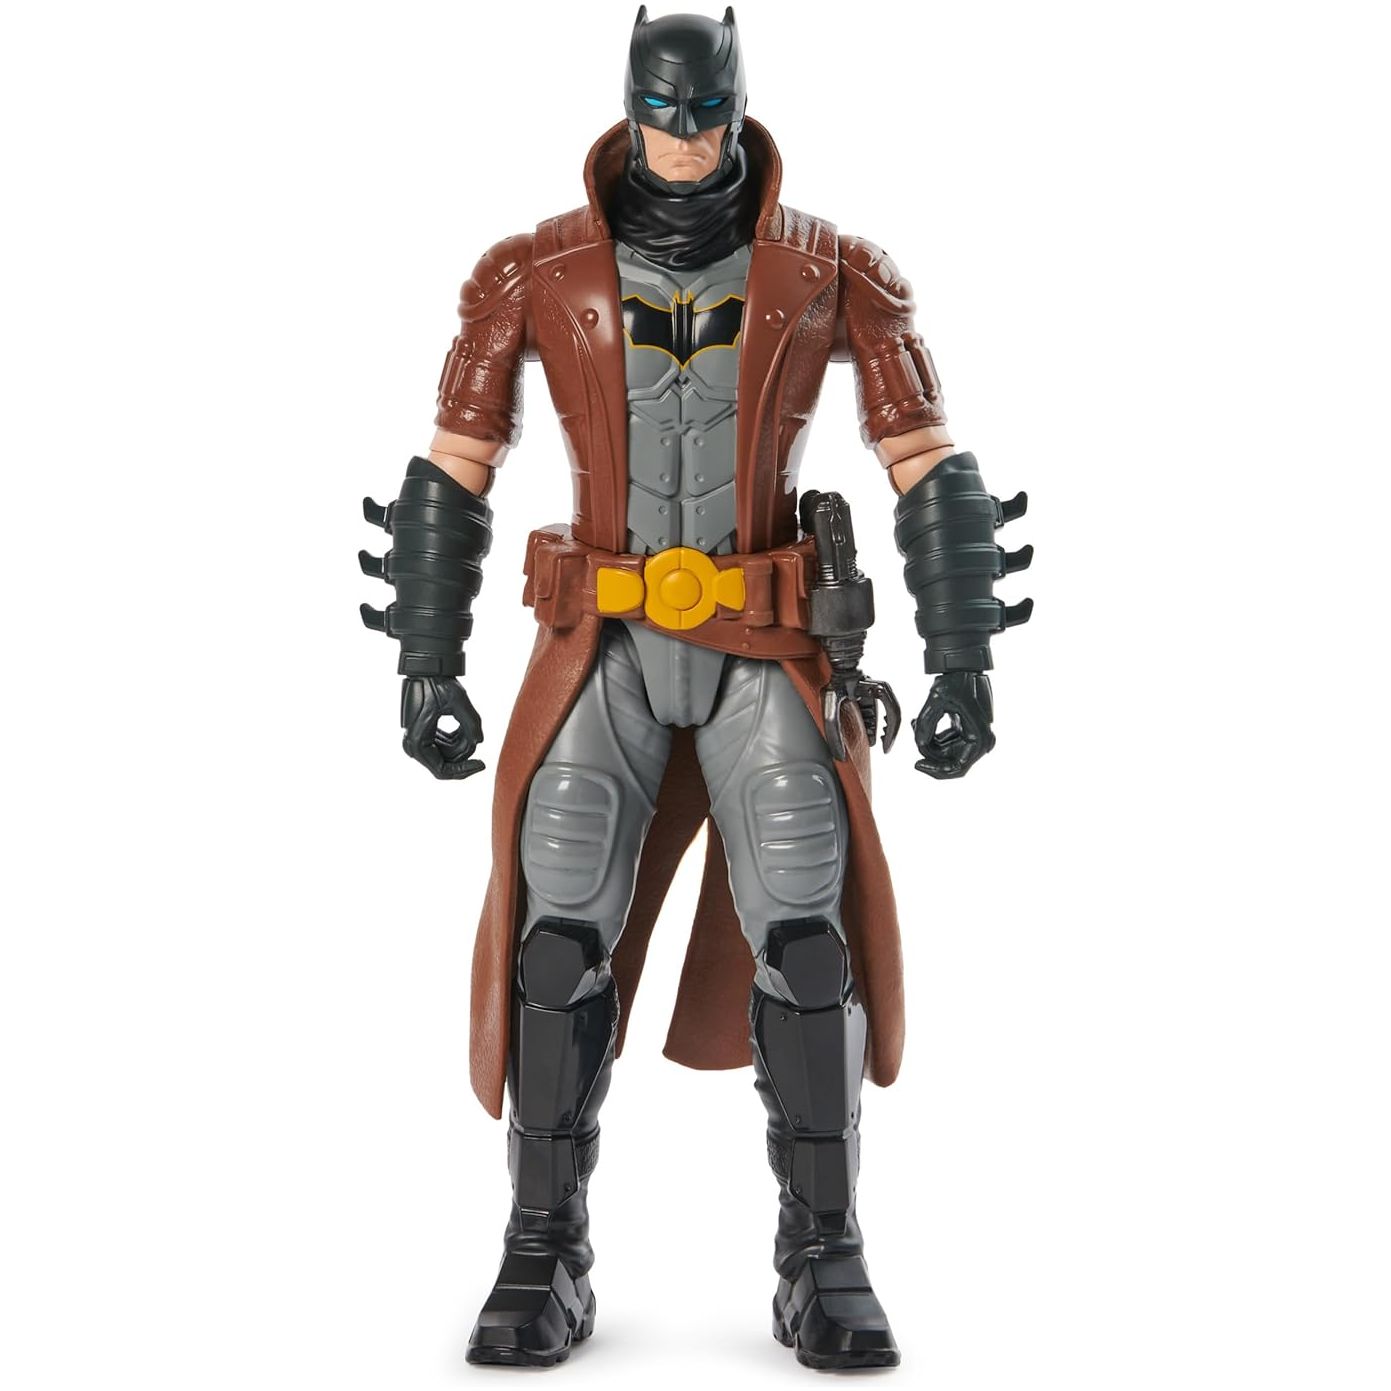 DC Comics, Batman Action Figure, 12-inch, Kids Toys - Brown